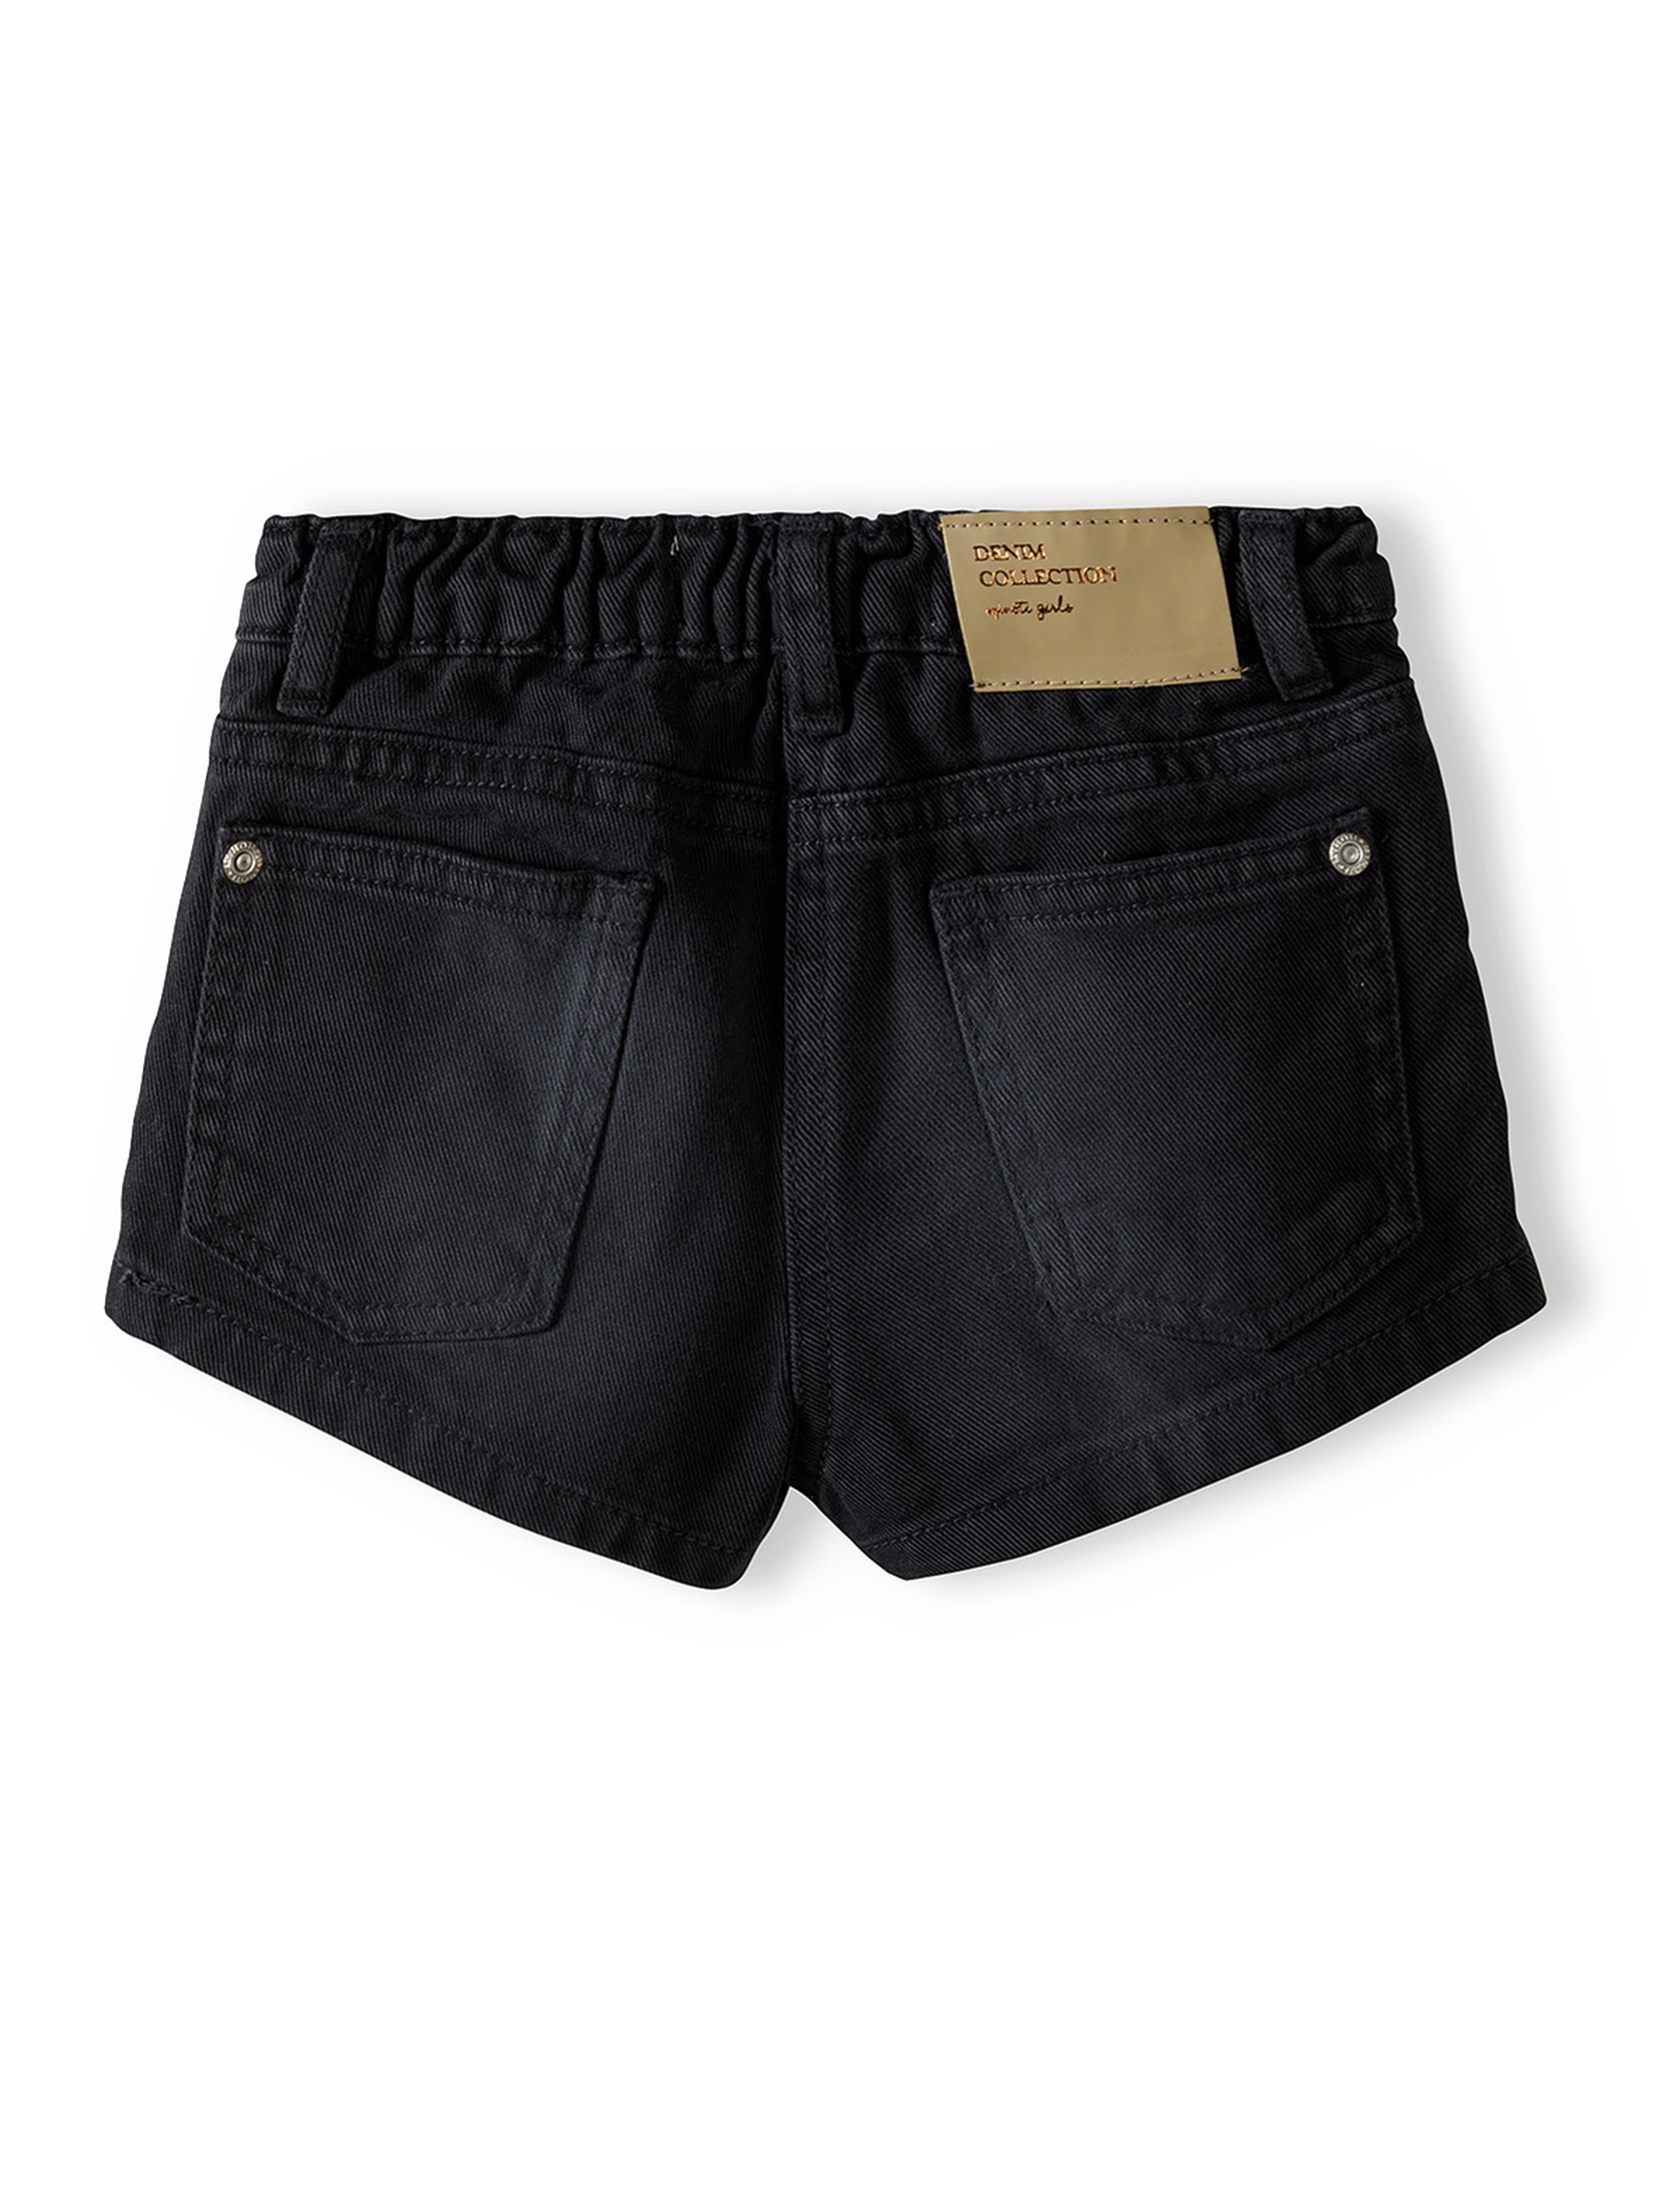 Krótkie szorty z jeansu dla dziewczynki - czarne